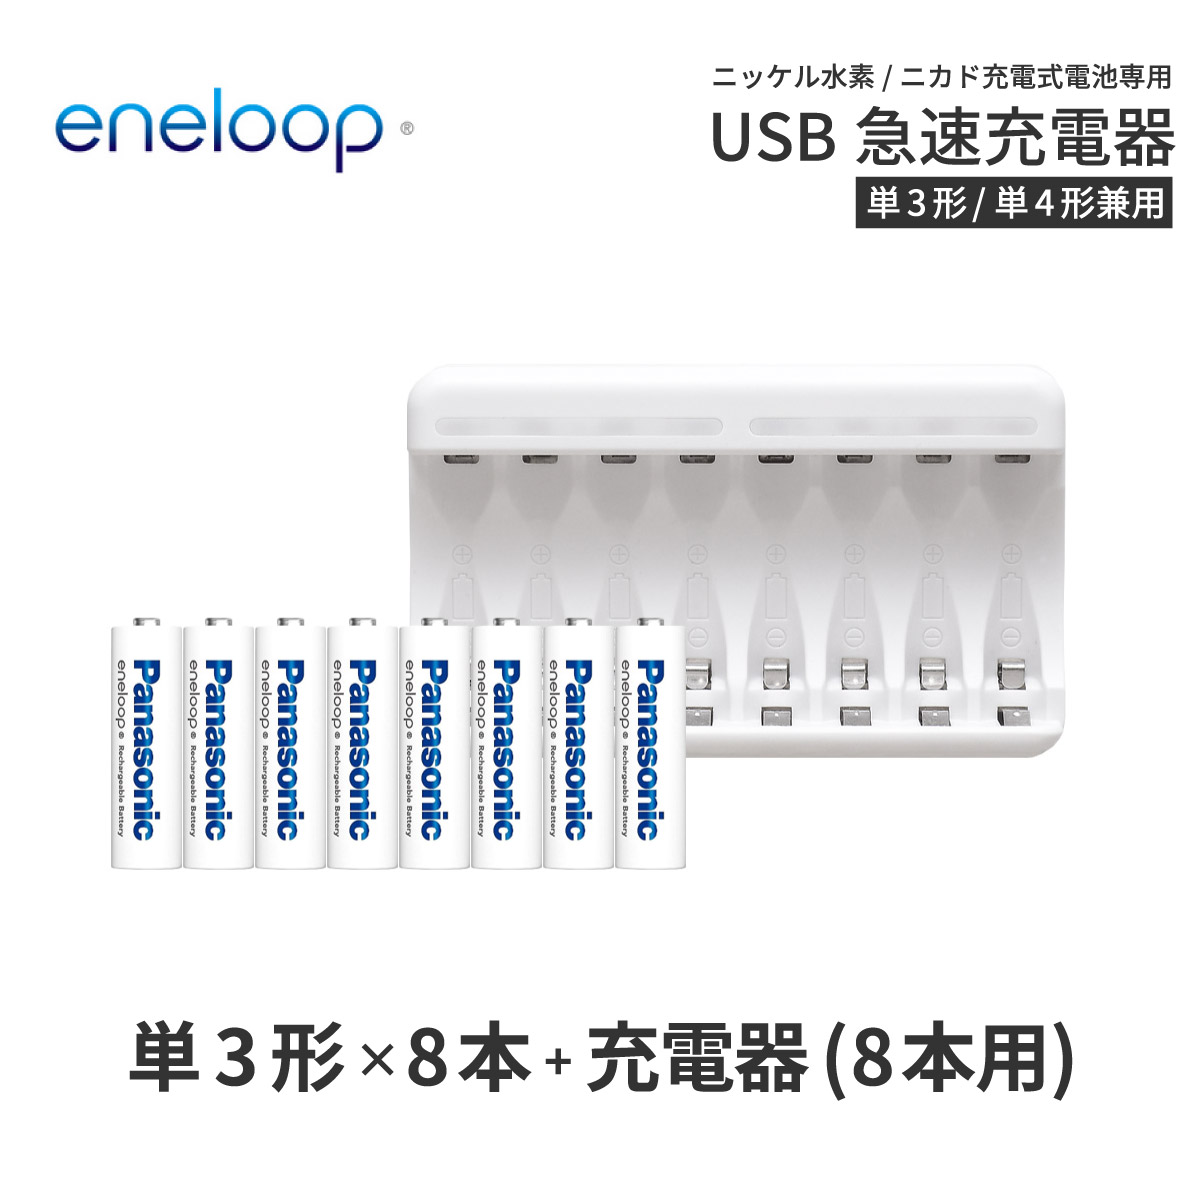 エネループ eneloop 単3 充電池 充電器 充電器セット<BR>単3形 8本とUSB充電器のセット USB 急速充電器 <BR>ニッケル水素電池 <BR>充電池 単3<BR>ネコポス送料無料 予約